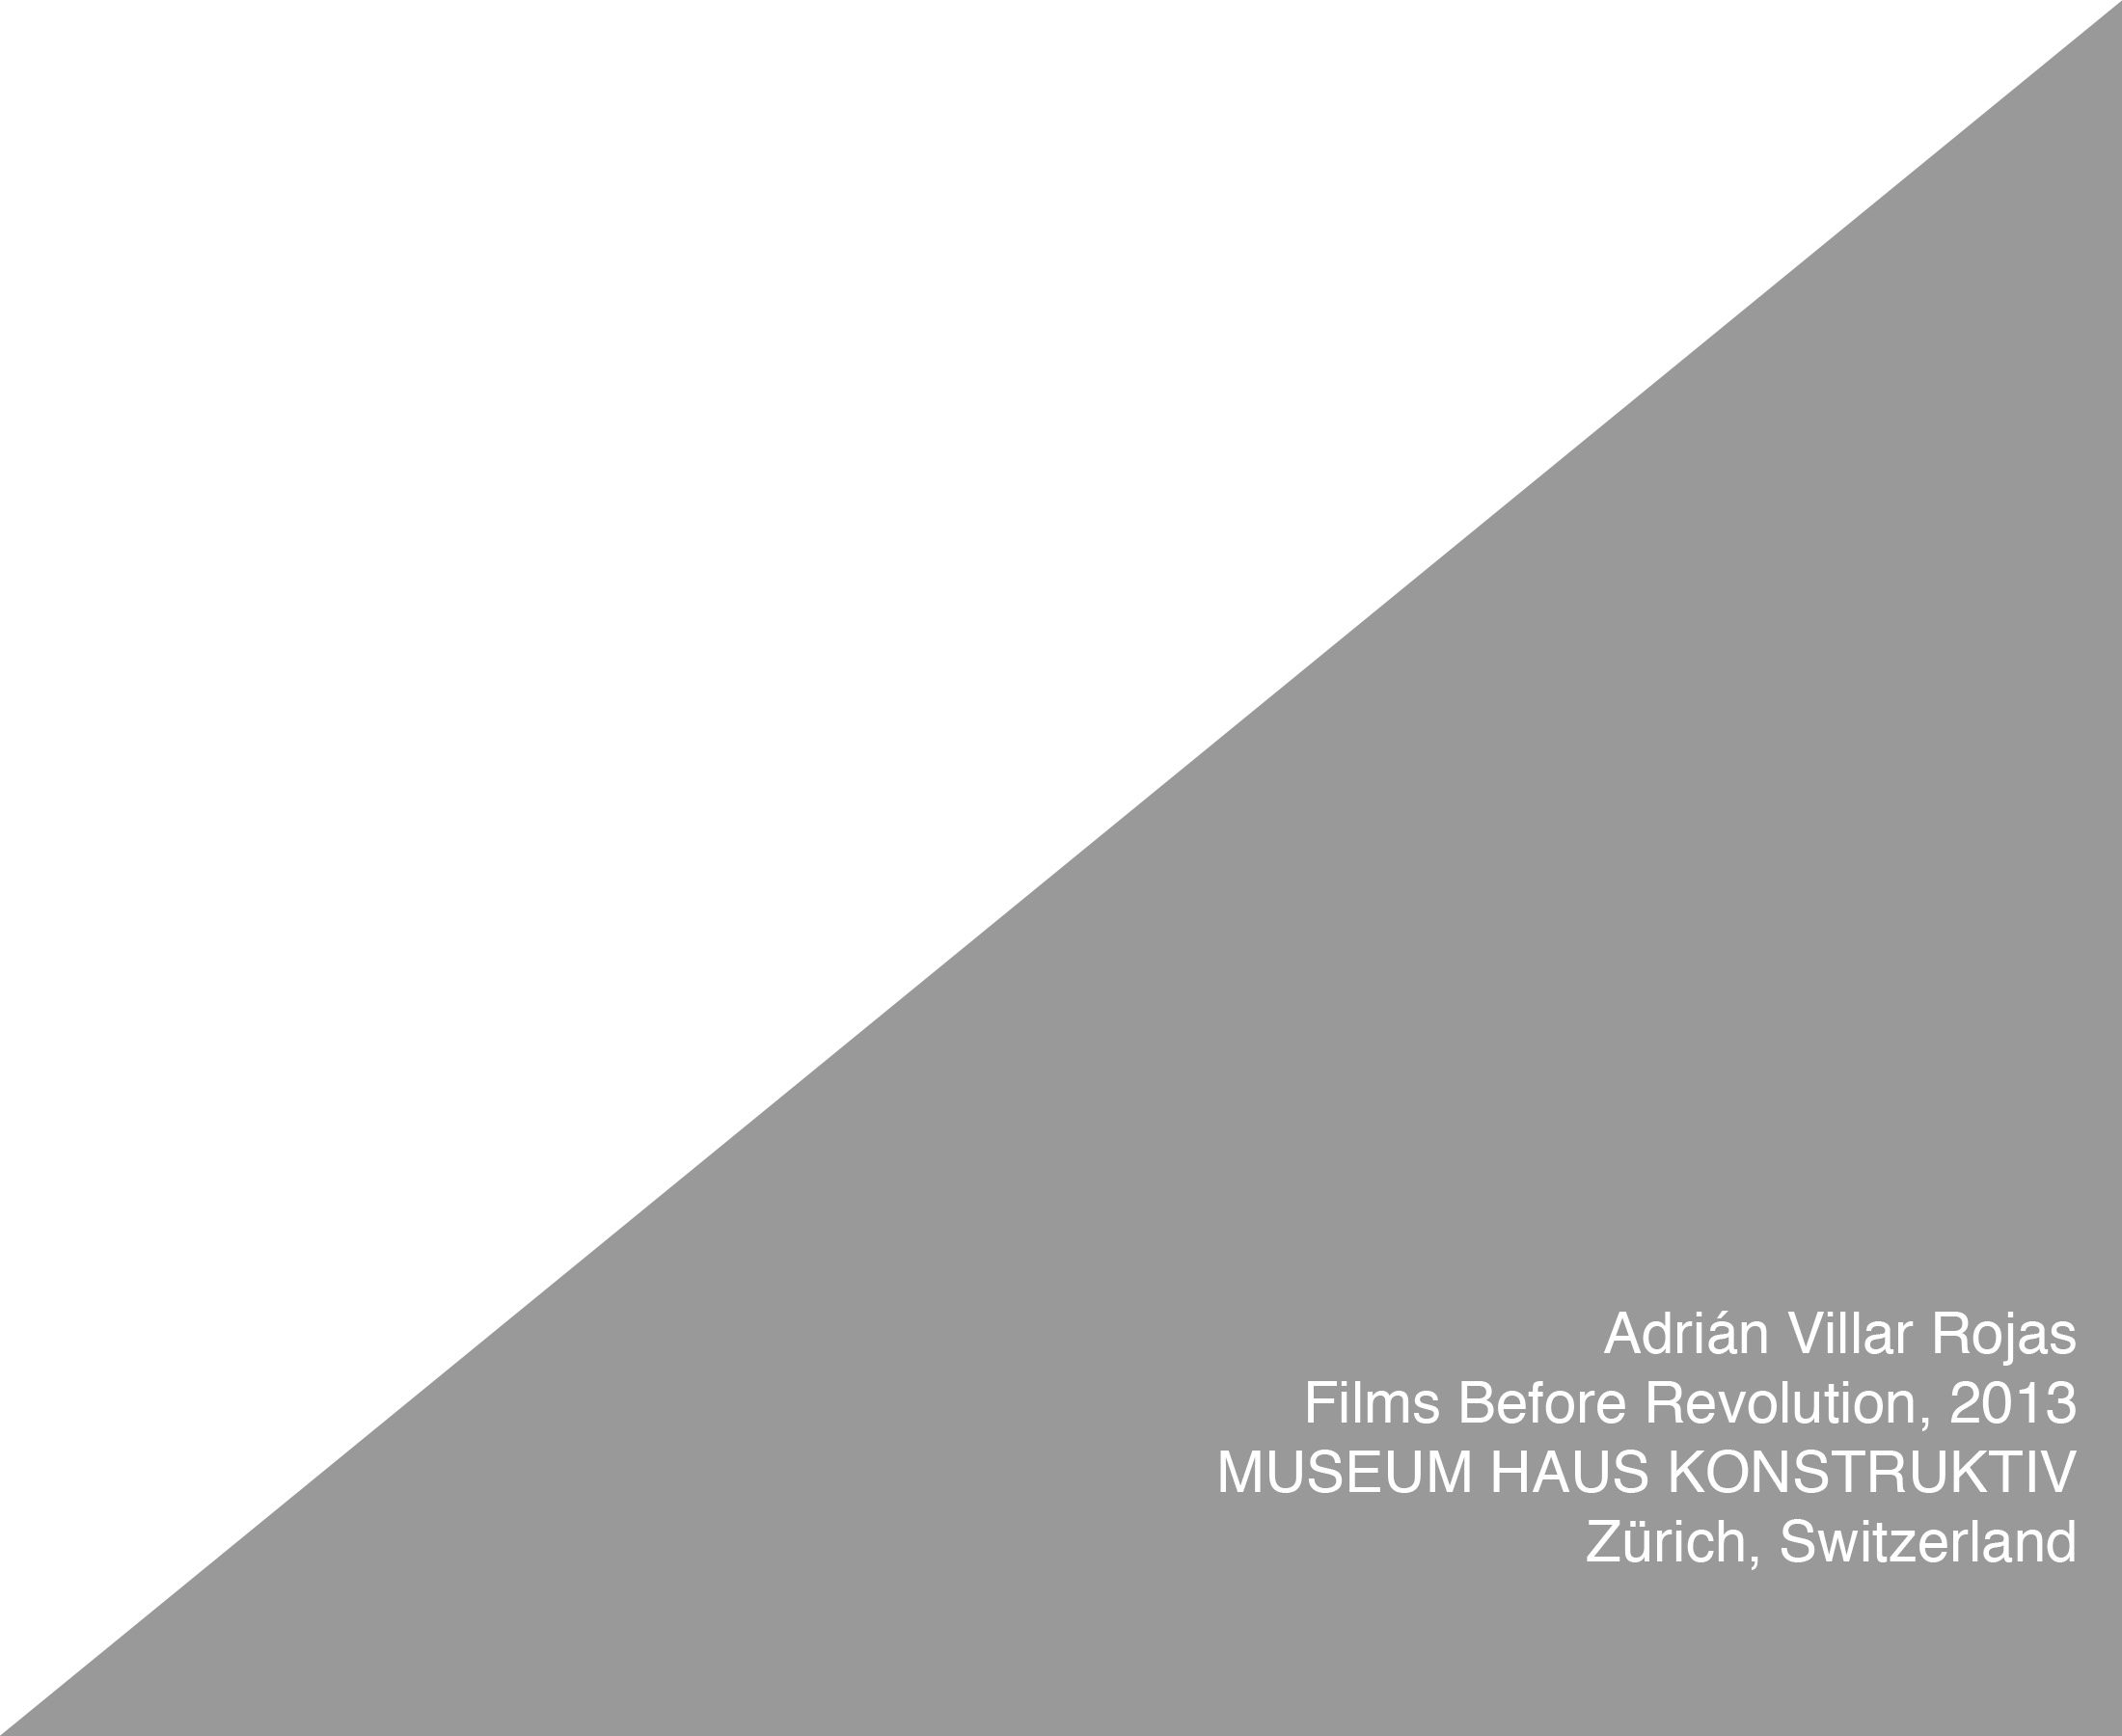 AVR FBR Zuerich 2013 title